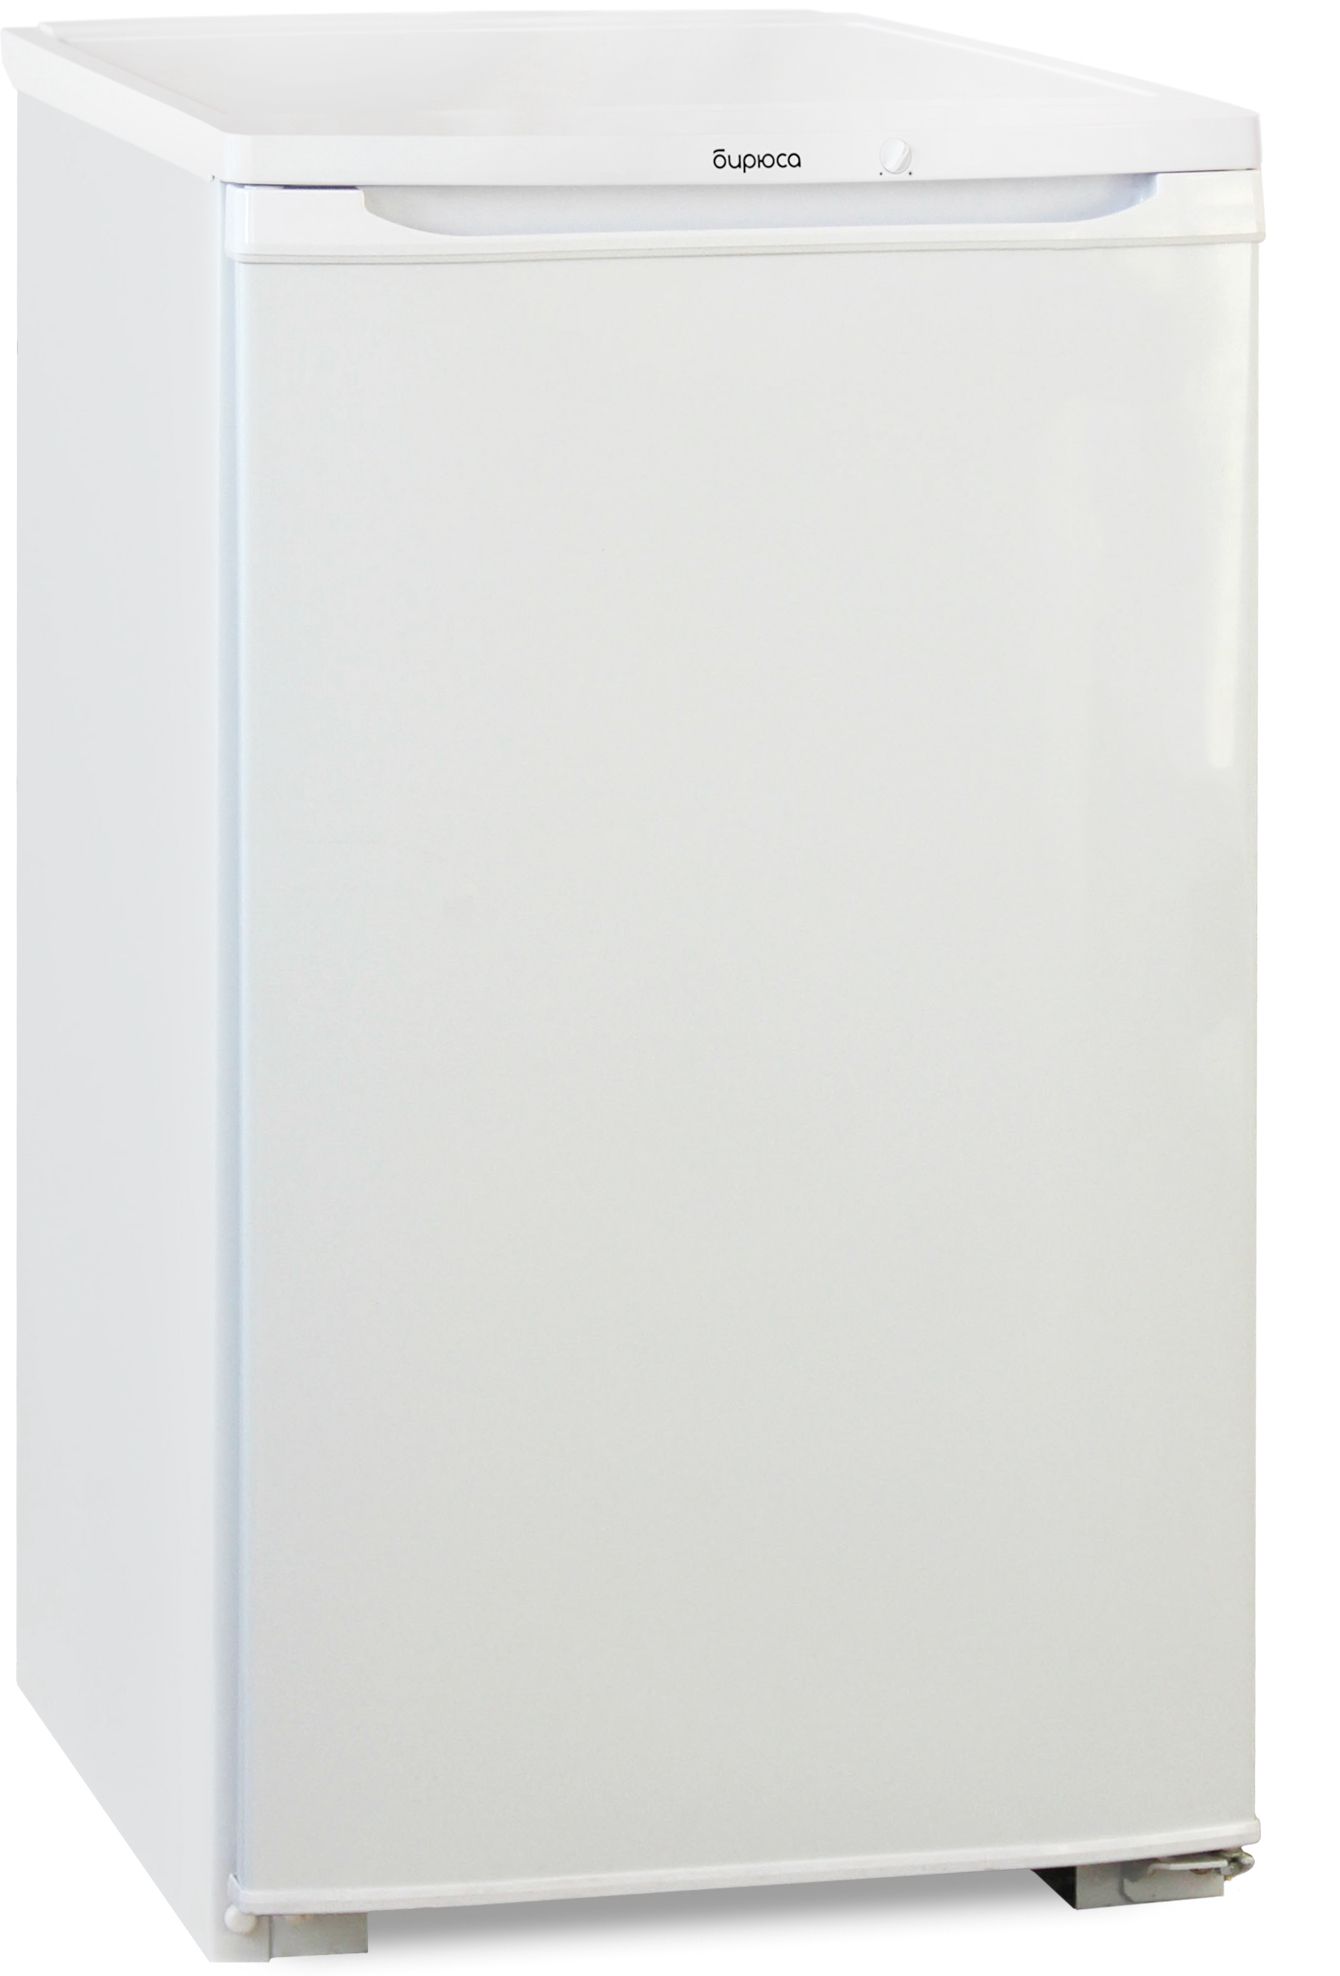 холодильник бирюса 108, купить в Красноярске холодильник бирюса 108,  купить в Красноярске дешево холодильник бирюса 108, купить в Красноярске минимальной цене холодильник бирюса 108